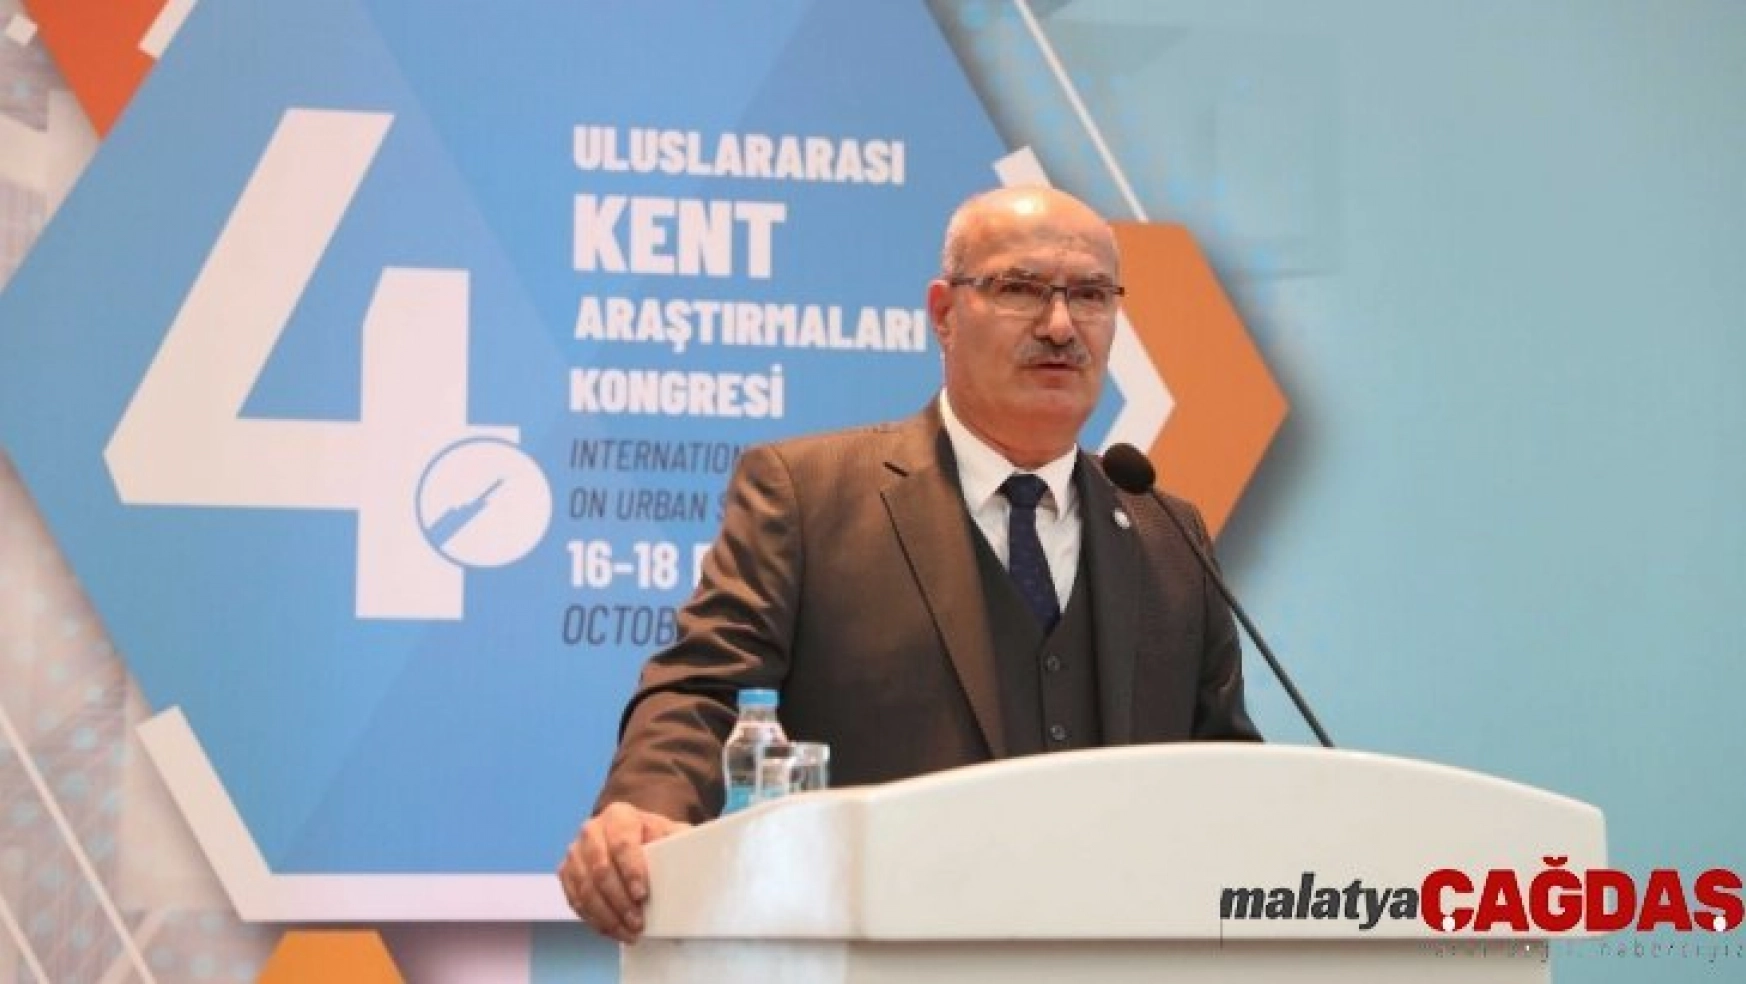 ATO Başkanı Baran: 'Ankara'nın Anadolu'nun dünyaya açılan markası olması için çalışıyoruz'